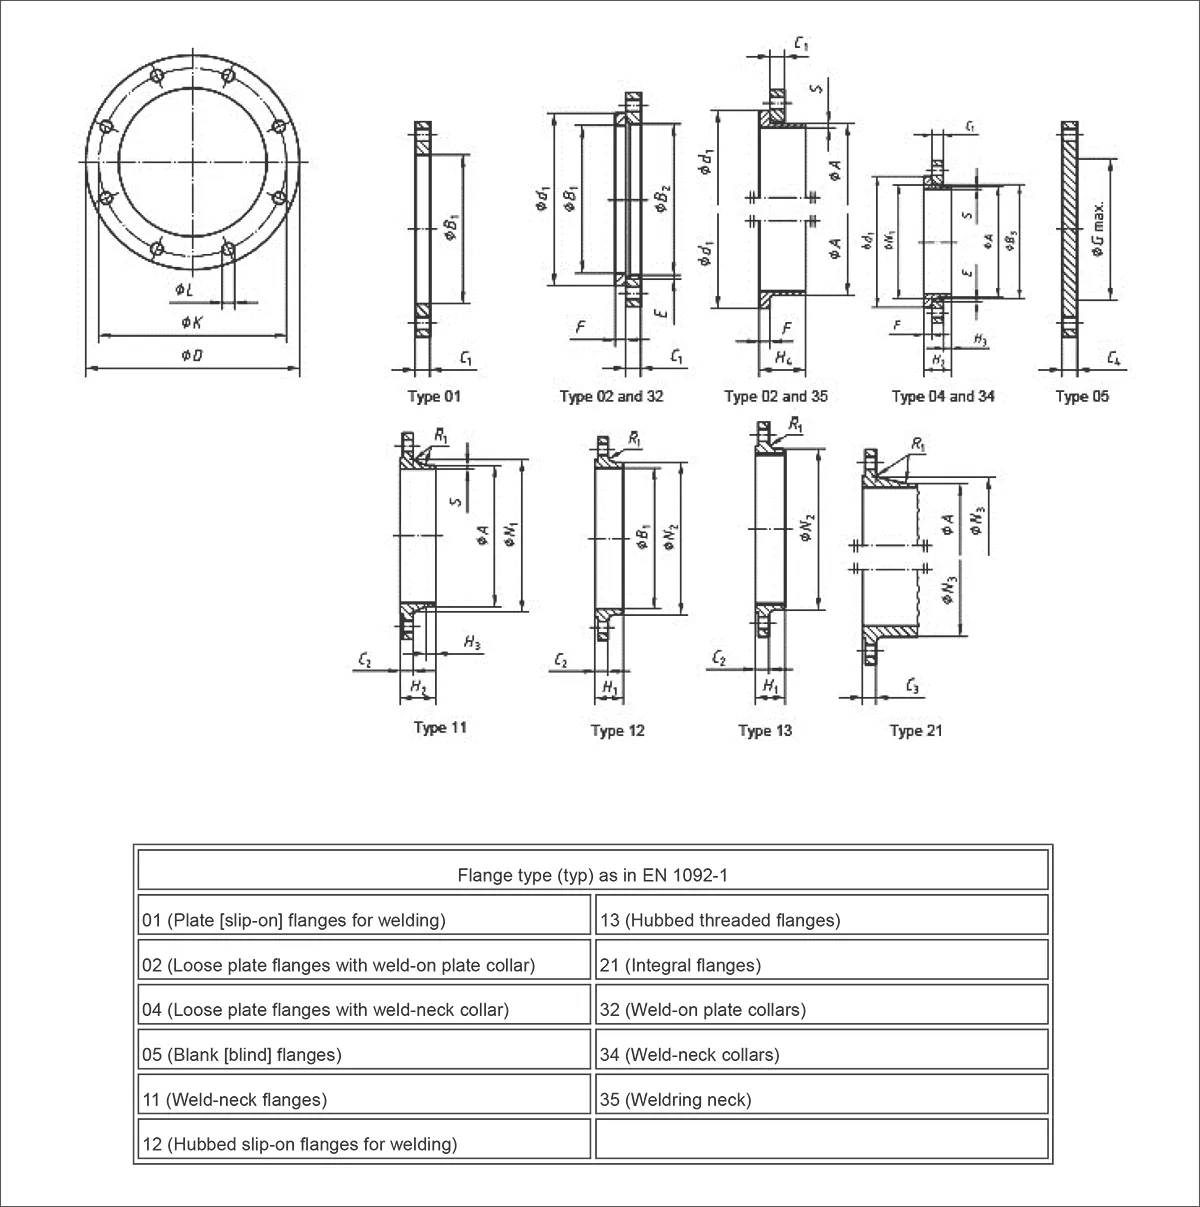 Standard specifications for EN 1092-1 PN25 flanges 1